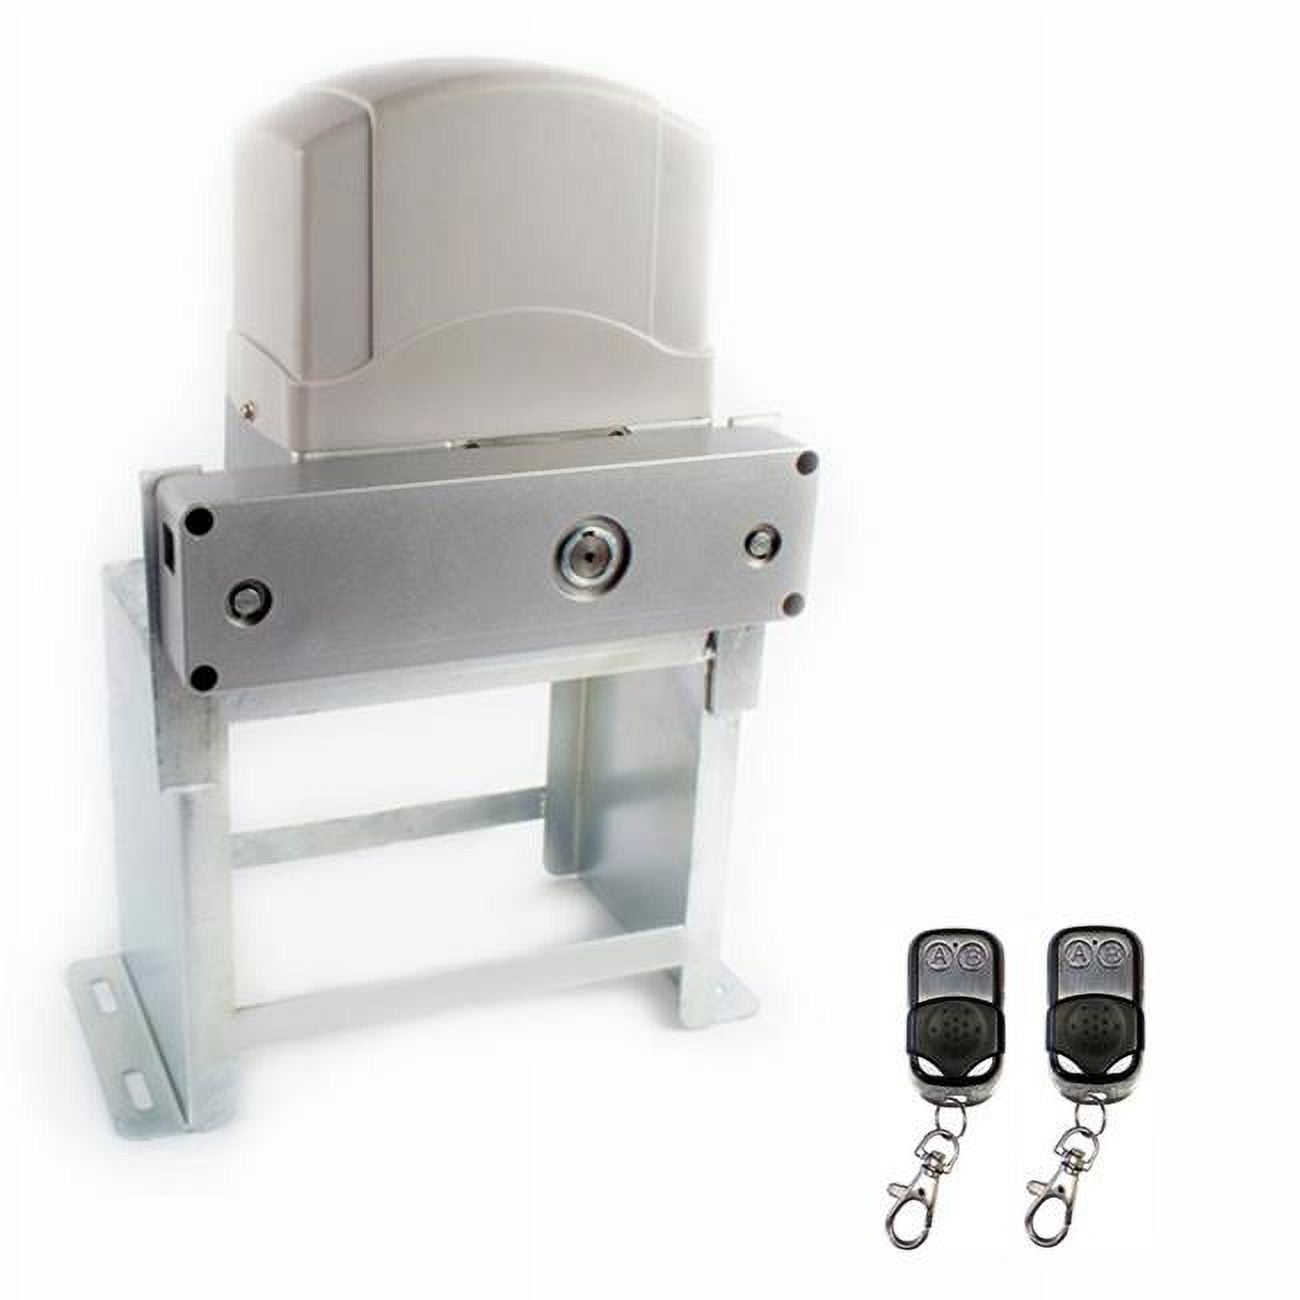 Ac1800nor-unb Basic Kit Sliding Gate Opener For Sliding Gates Up To 45 Ft. Long & 1800 Lbs